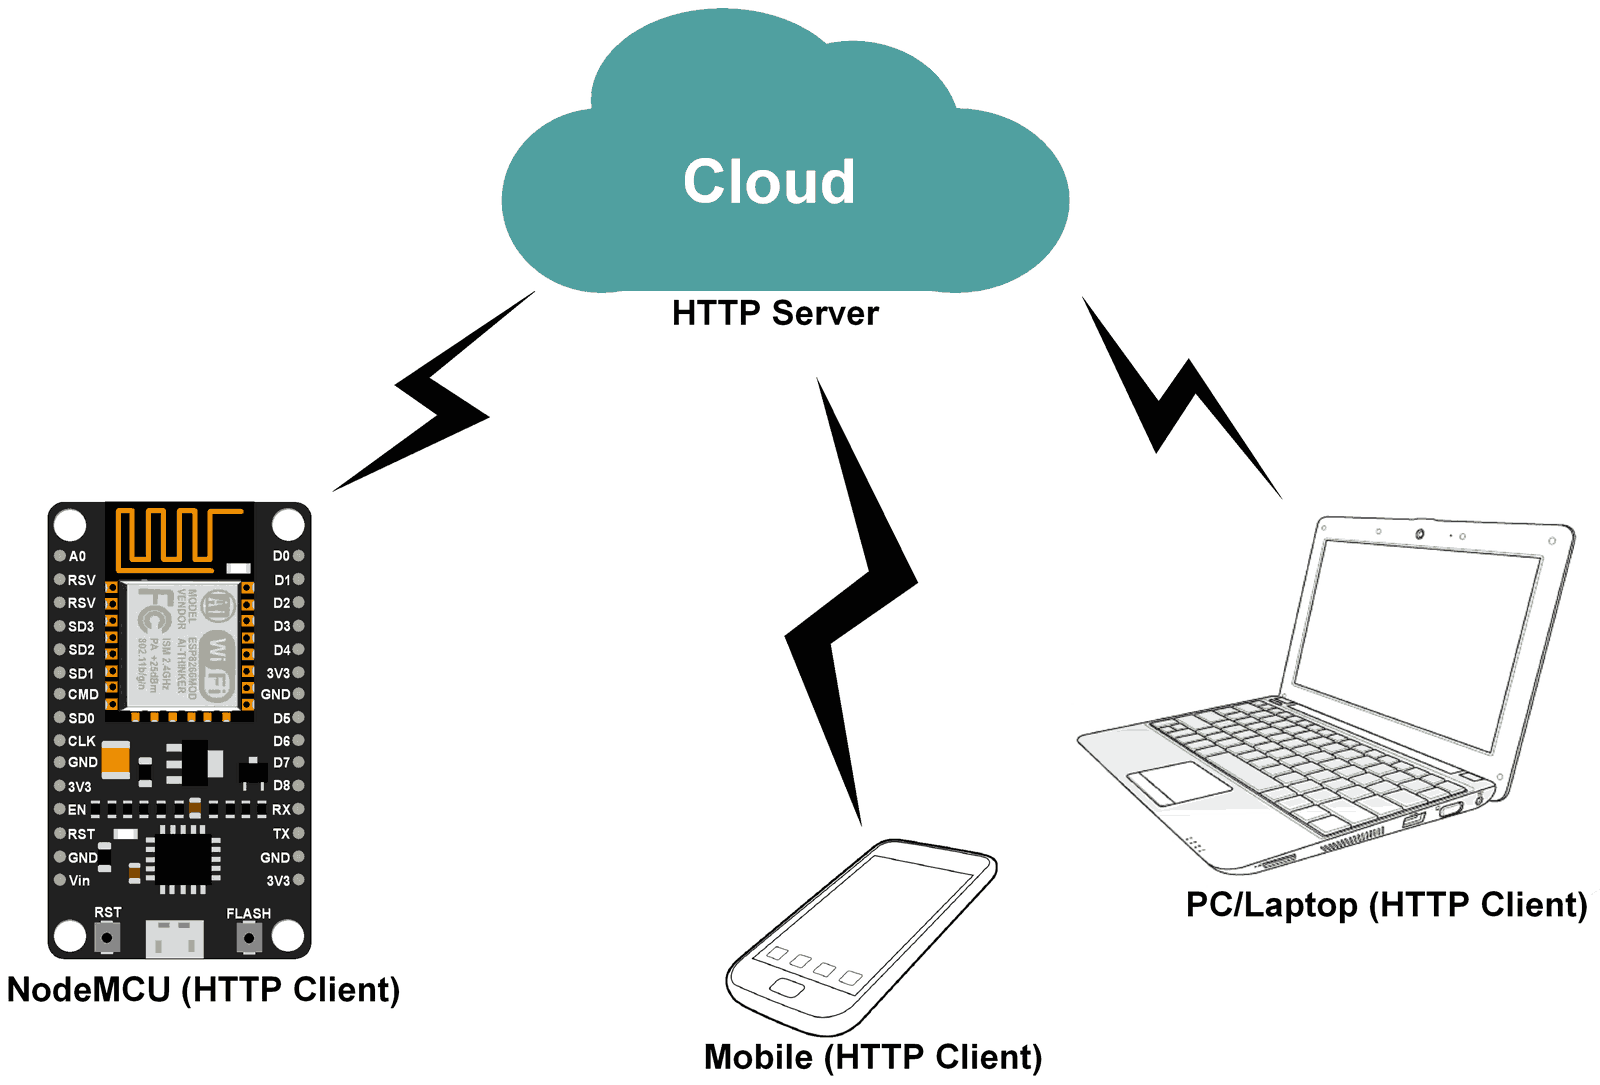 NodeMCU HTTP Client